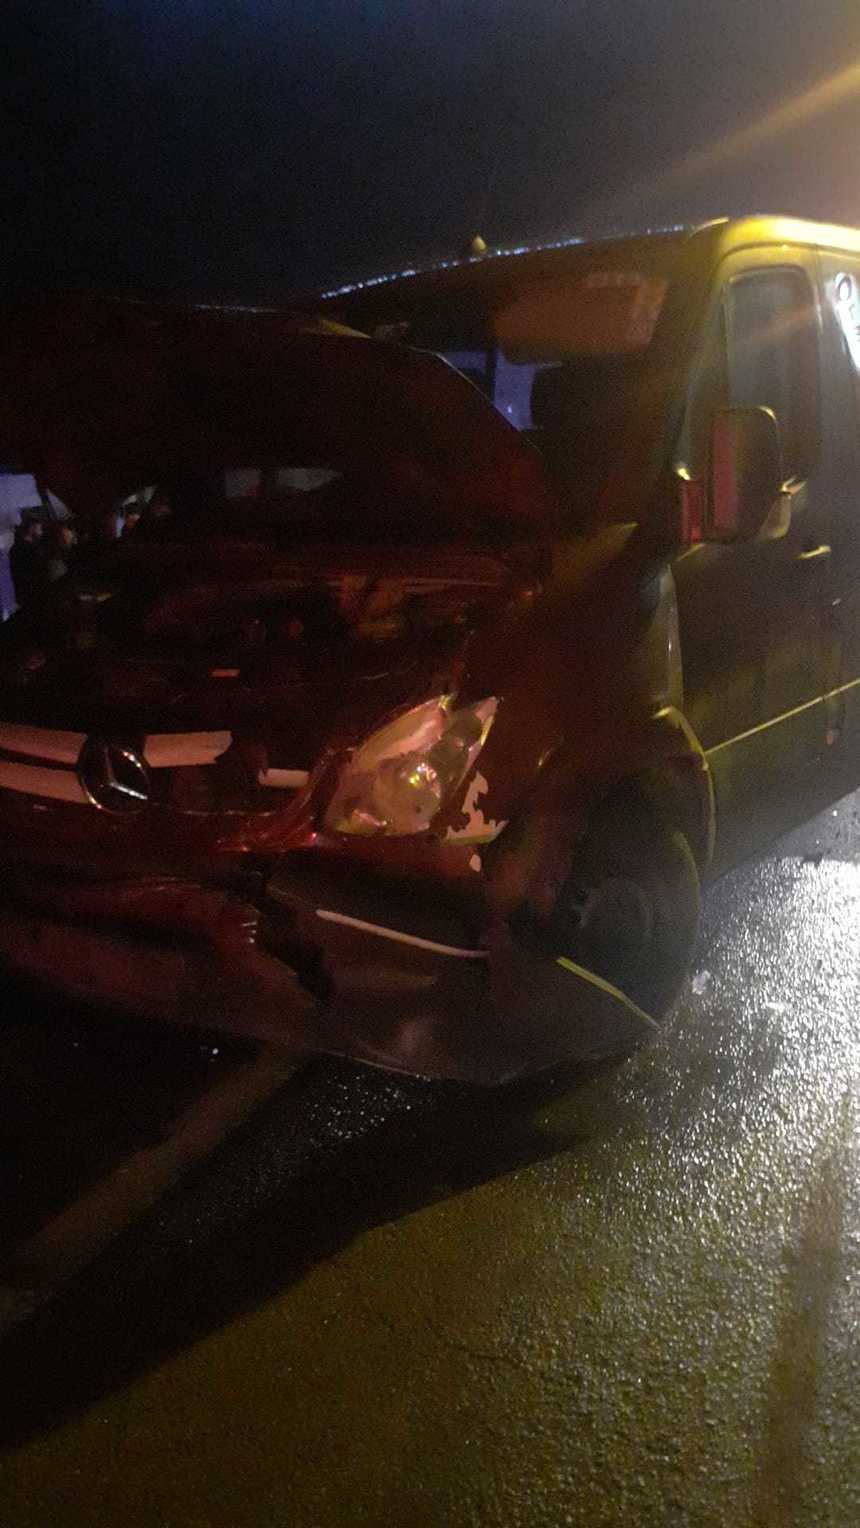 Cluj: Trei copii, răniţi într-un accident rutier / Un tânăr de 19 ani a vrut să întoarcă maşina peste marcajul continuu care separă sensurile de mers / Autoturismul, lovit de un alt vehicul

